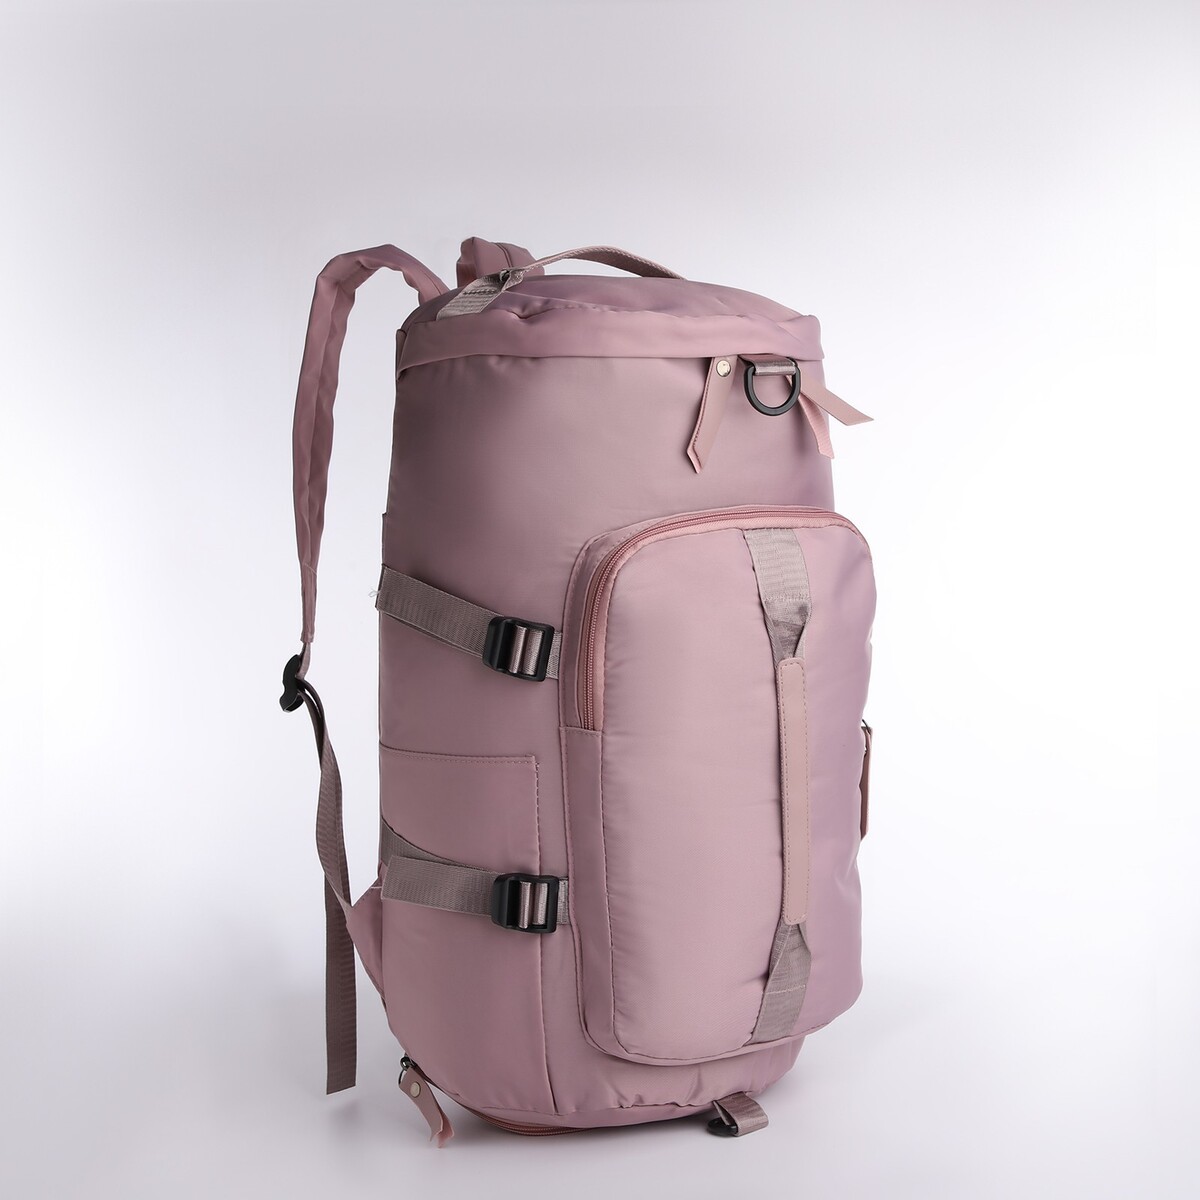 Рюкзак-сумка на молнии, 4 наружных кармана, отделение для обуви, цвет розовый рюкзак на молнии 3 наружных кармана розовый белый